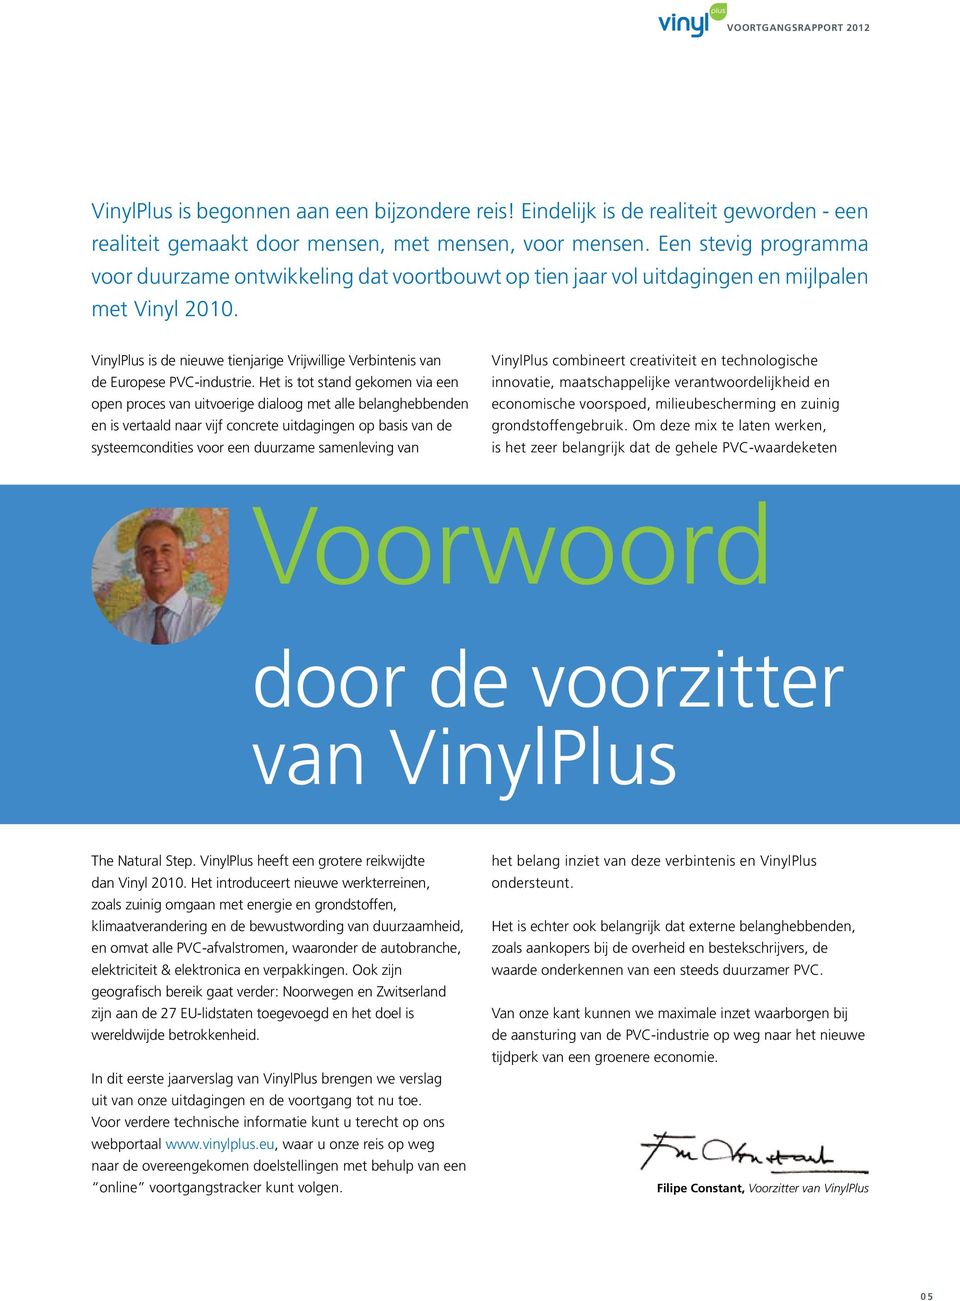 VinylPlus is de nieuwe tienjarige Vrijwillige Verbintenis van de Europese PVC-industrie.